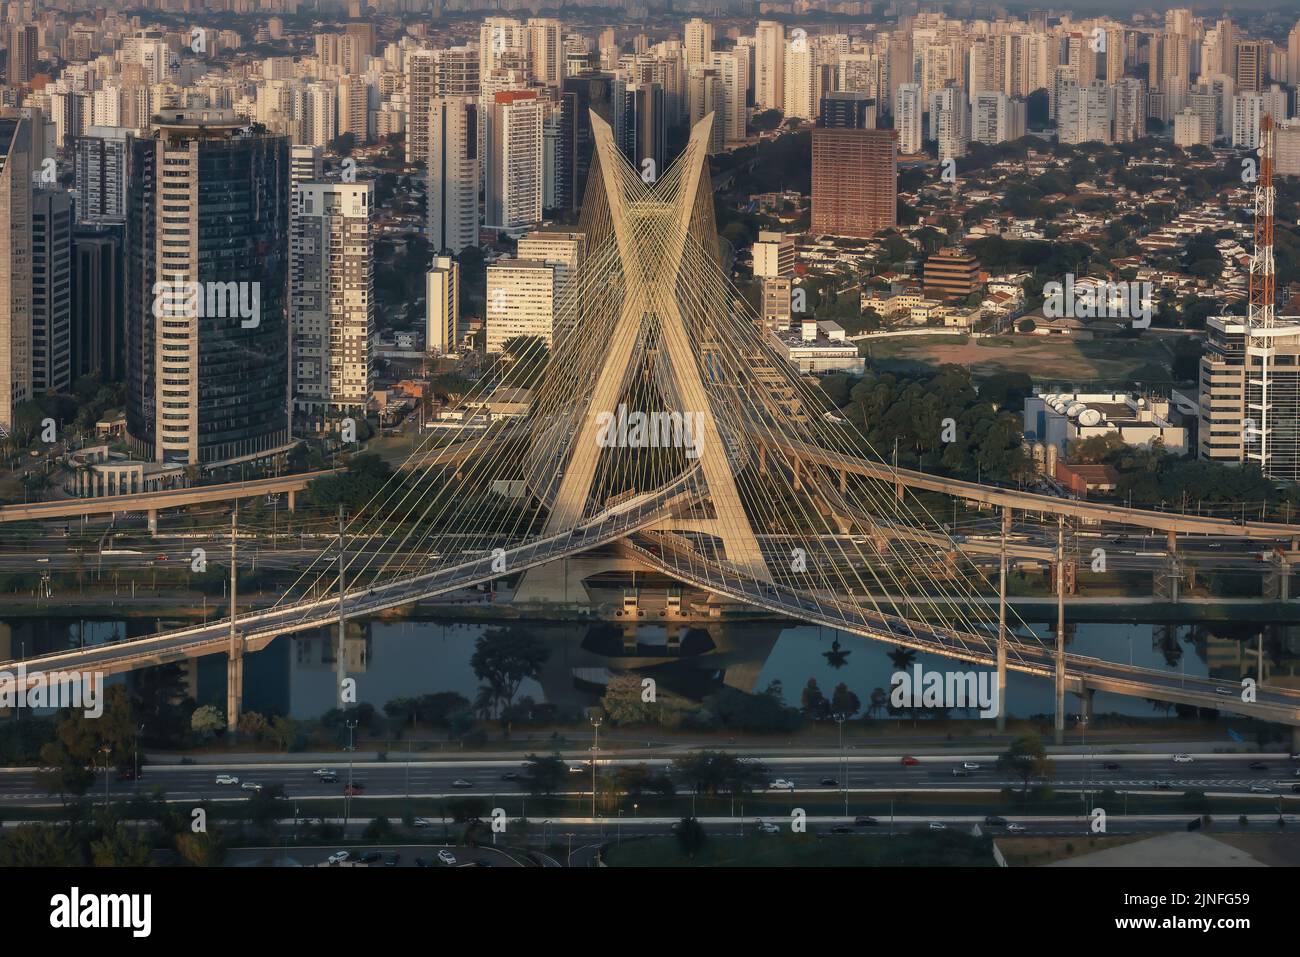 Aerial view of Octavio Frias de Oliveira Bridge (Ponte Estaiada) over Pinheiros River - Sao Paulo, Brazil Stock Photo